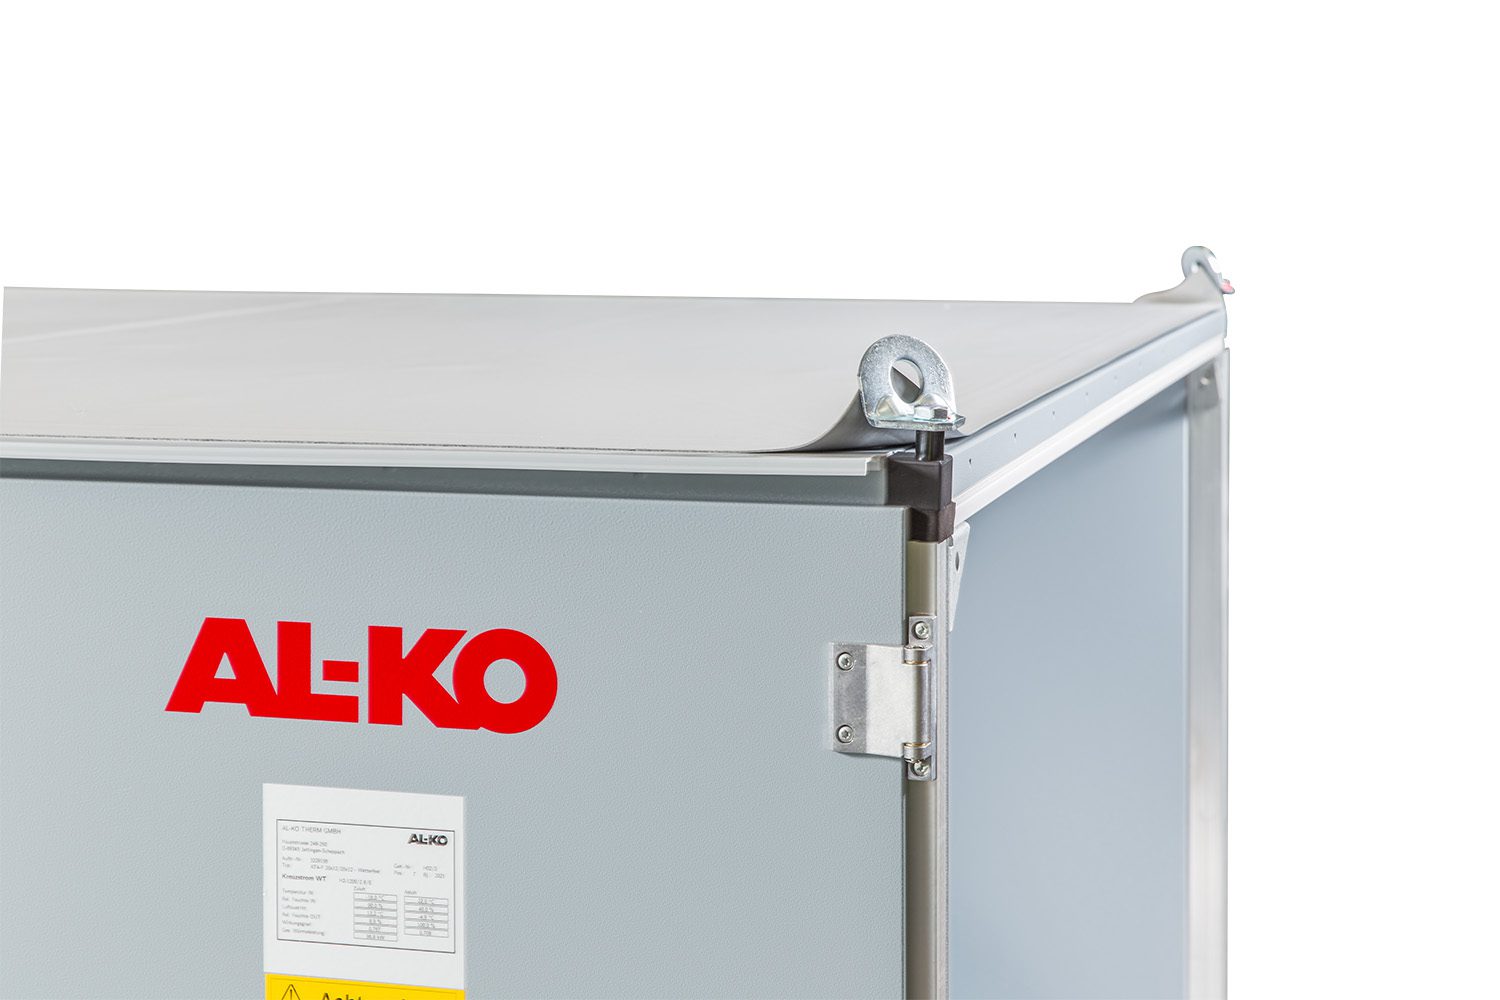 Serie AL-KO AT4 – Le vostre unità di ventilazione individuali